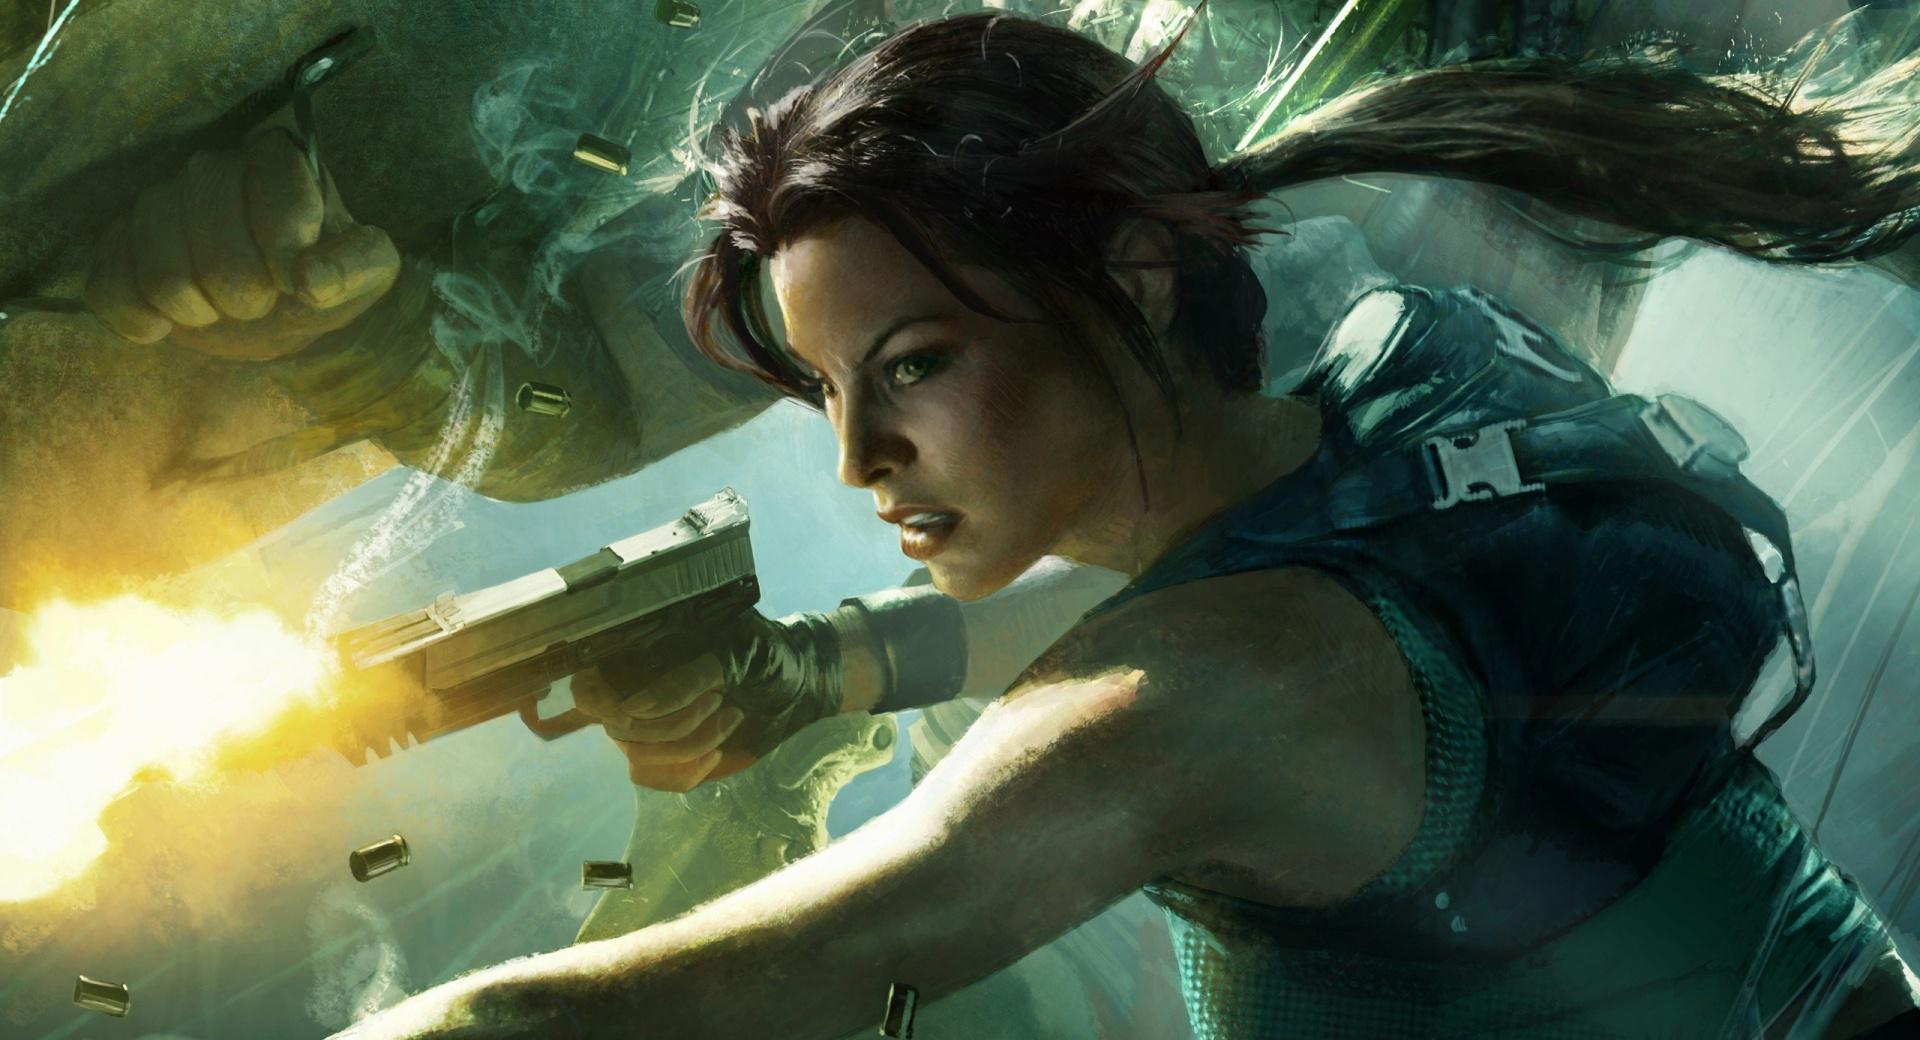 Lara Croft at 2048 x 2048 iPad size wallpapers HD quality